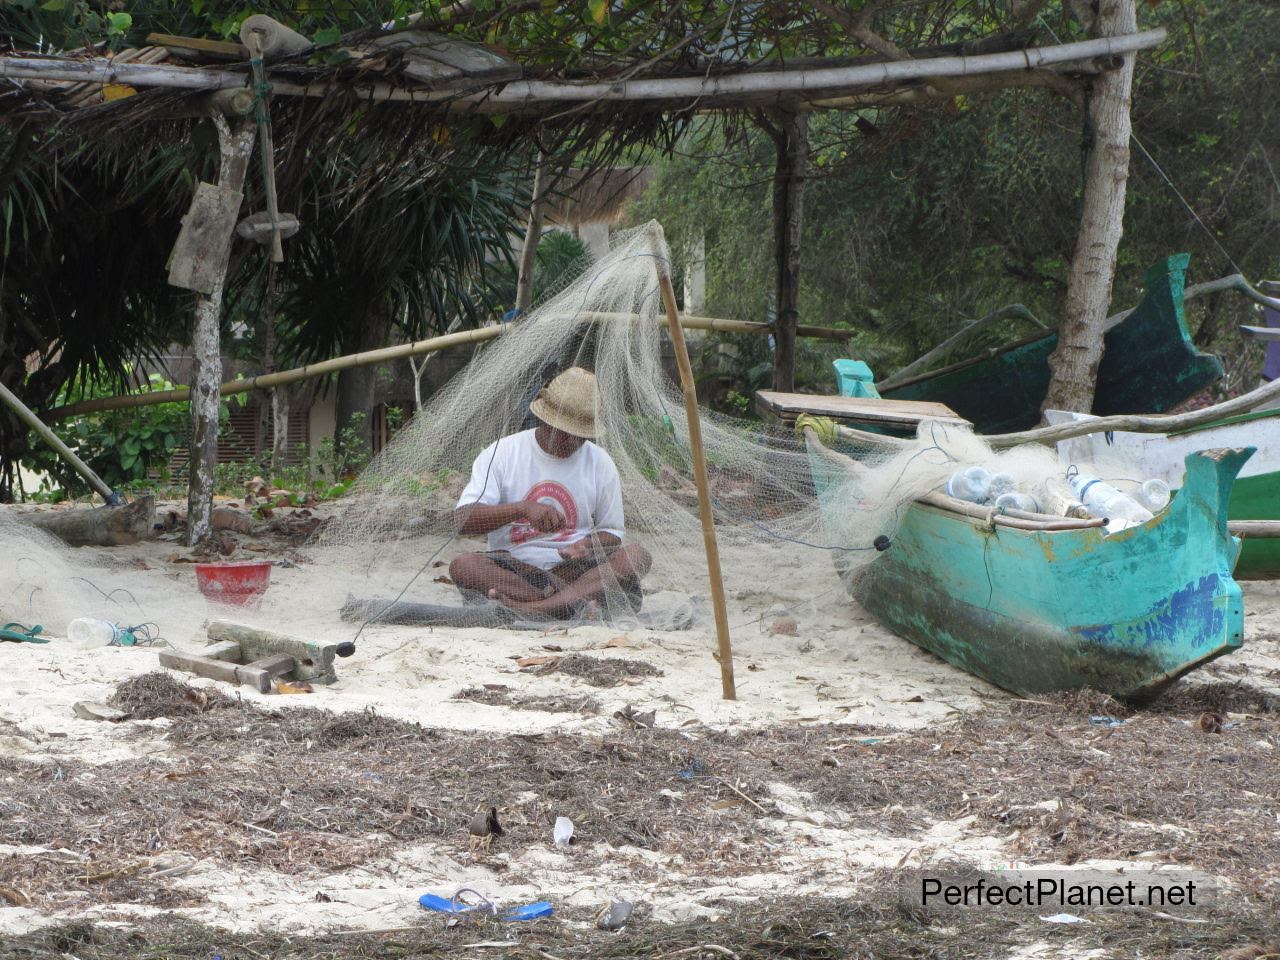 Fishermen repairing his nets